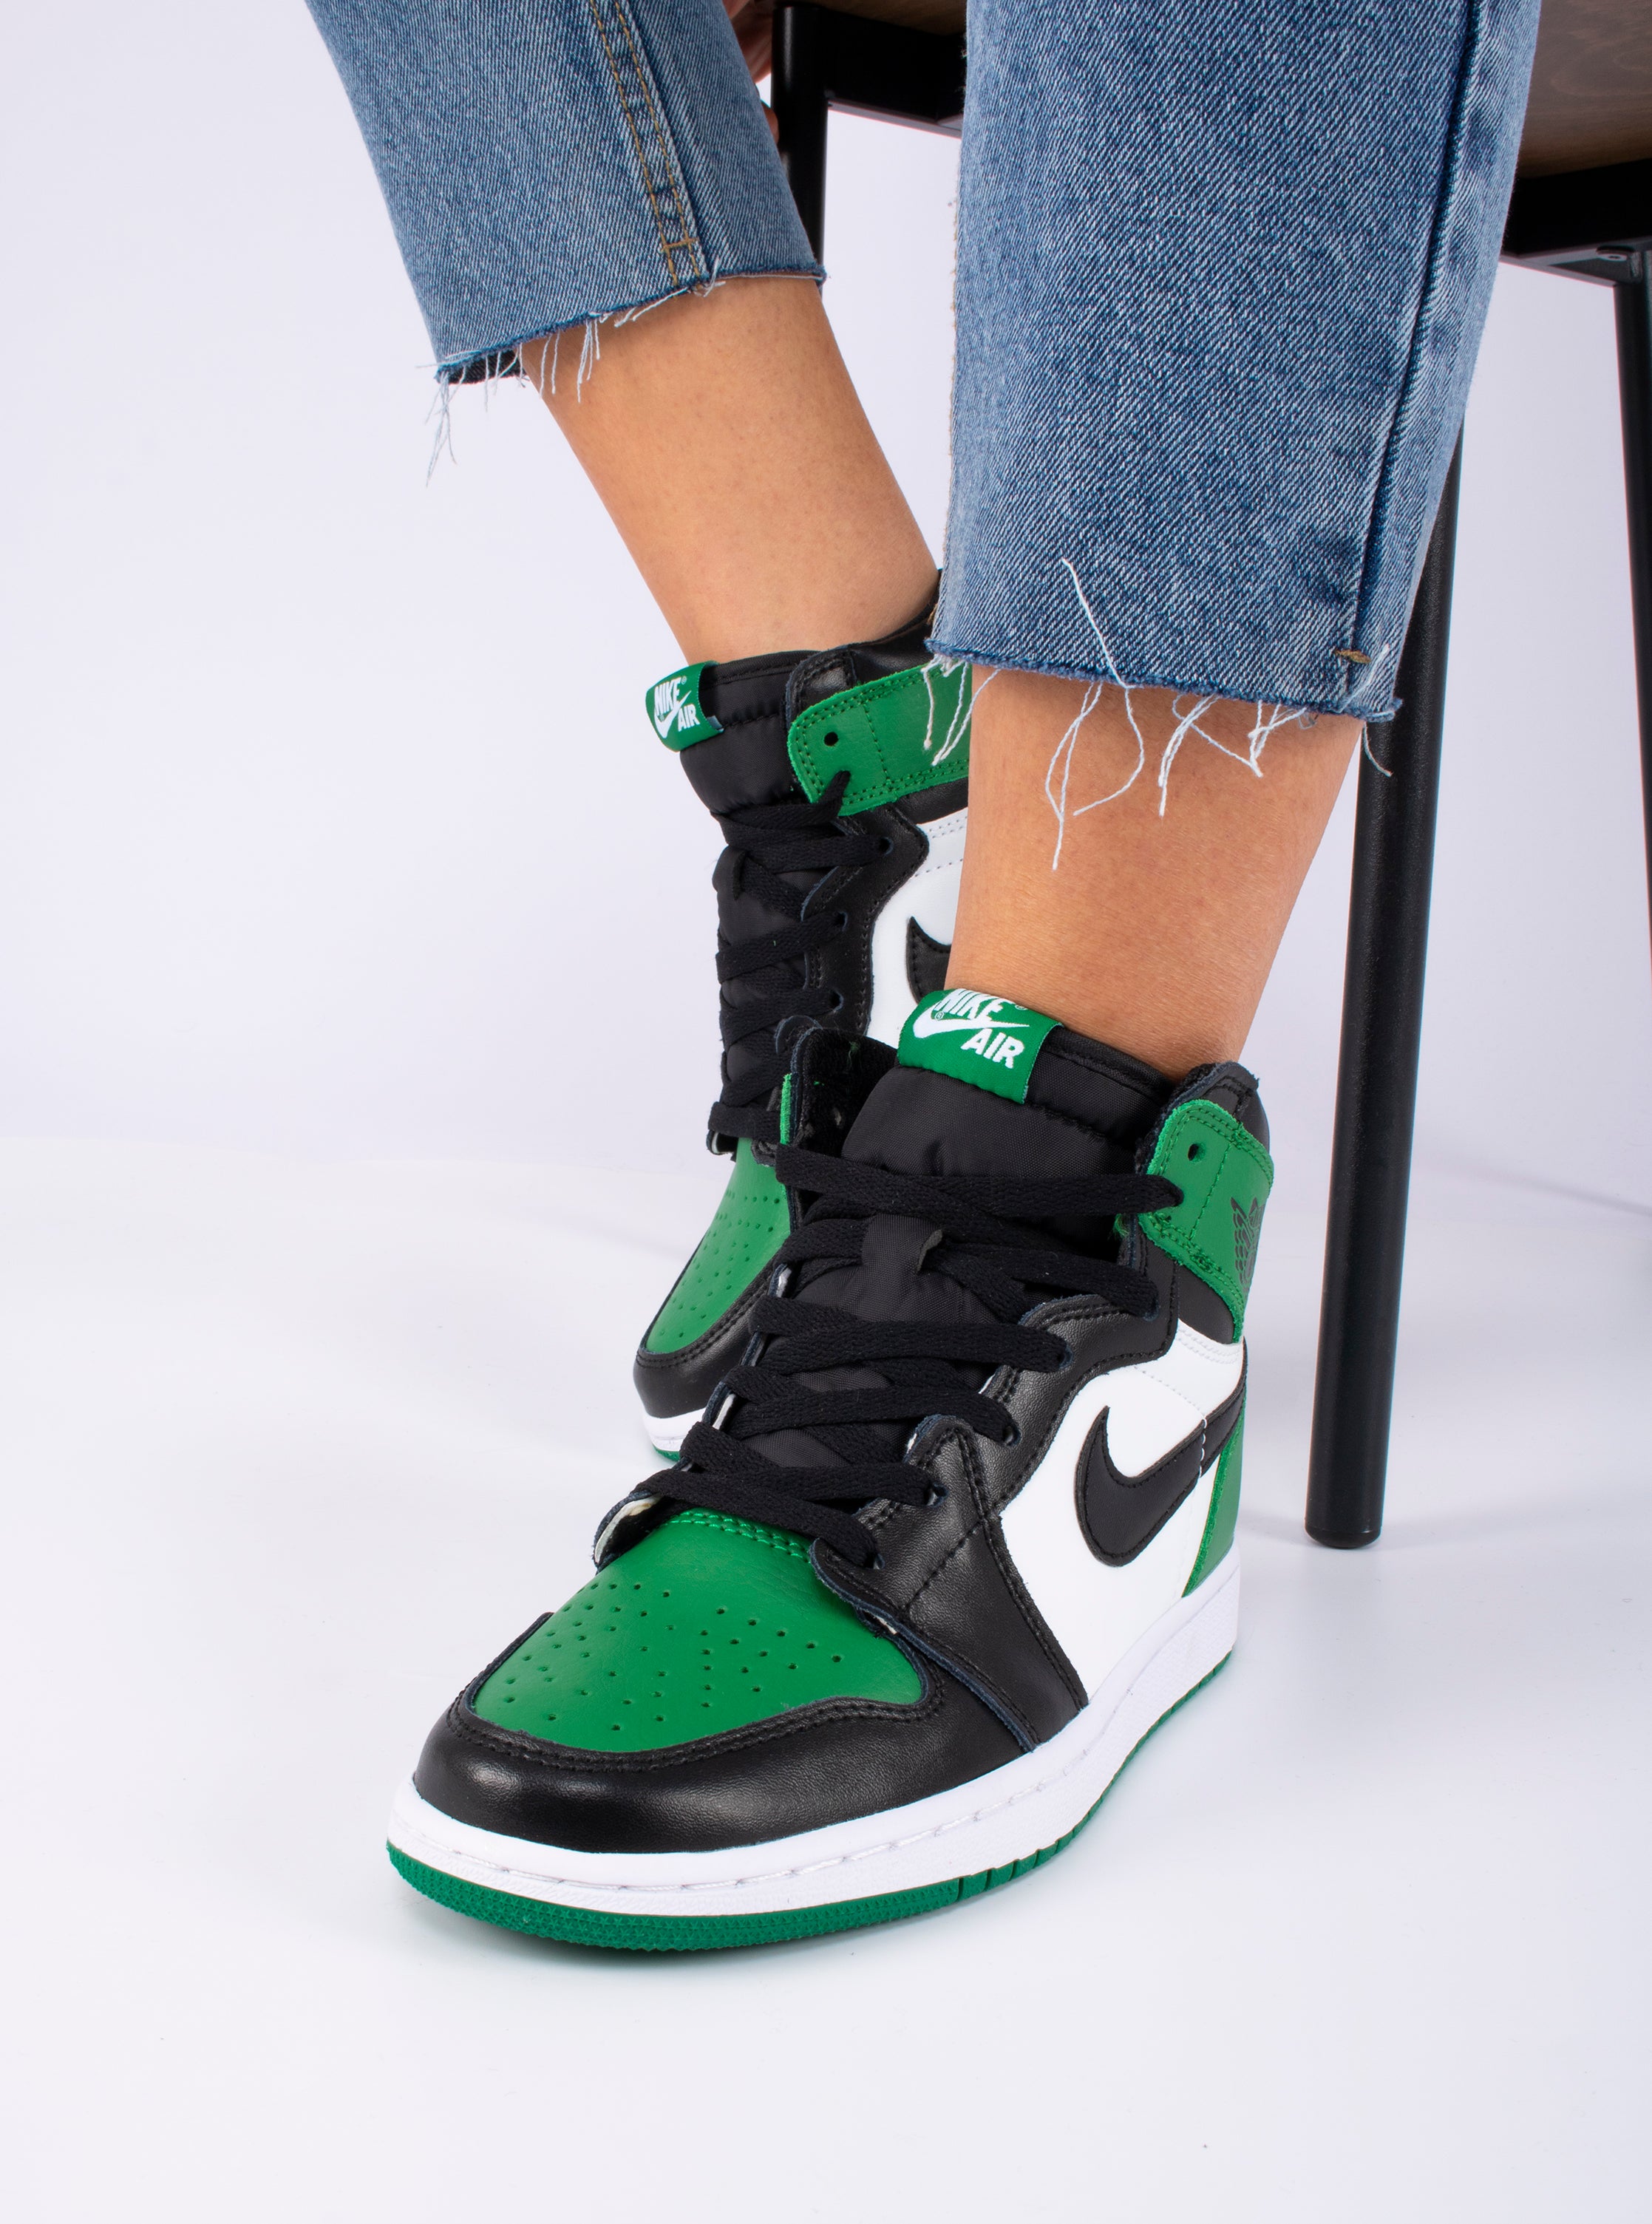 Nike Air Jordan 1 Retro 'Pine Green'